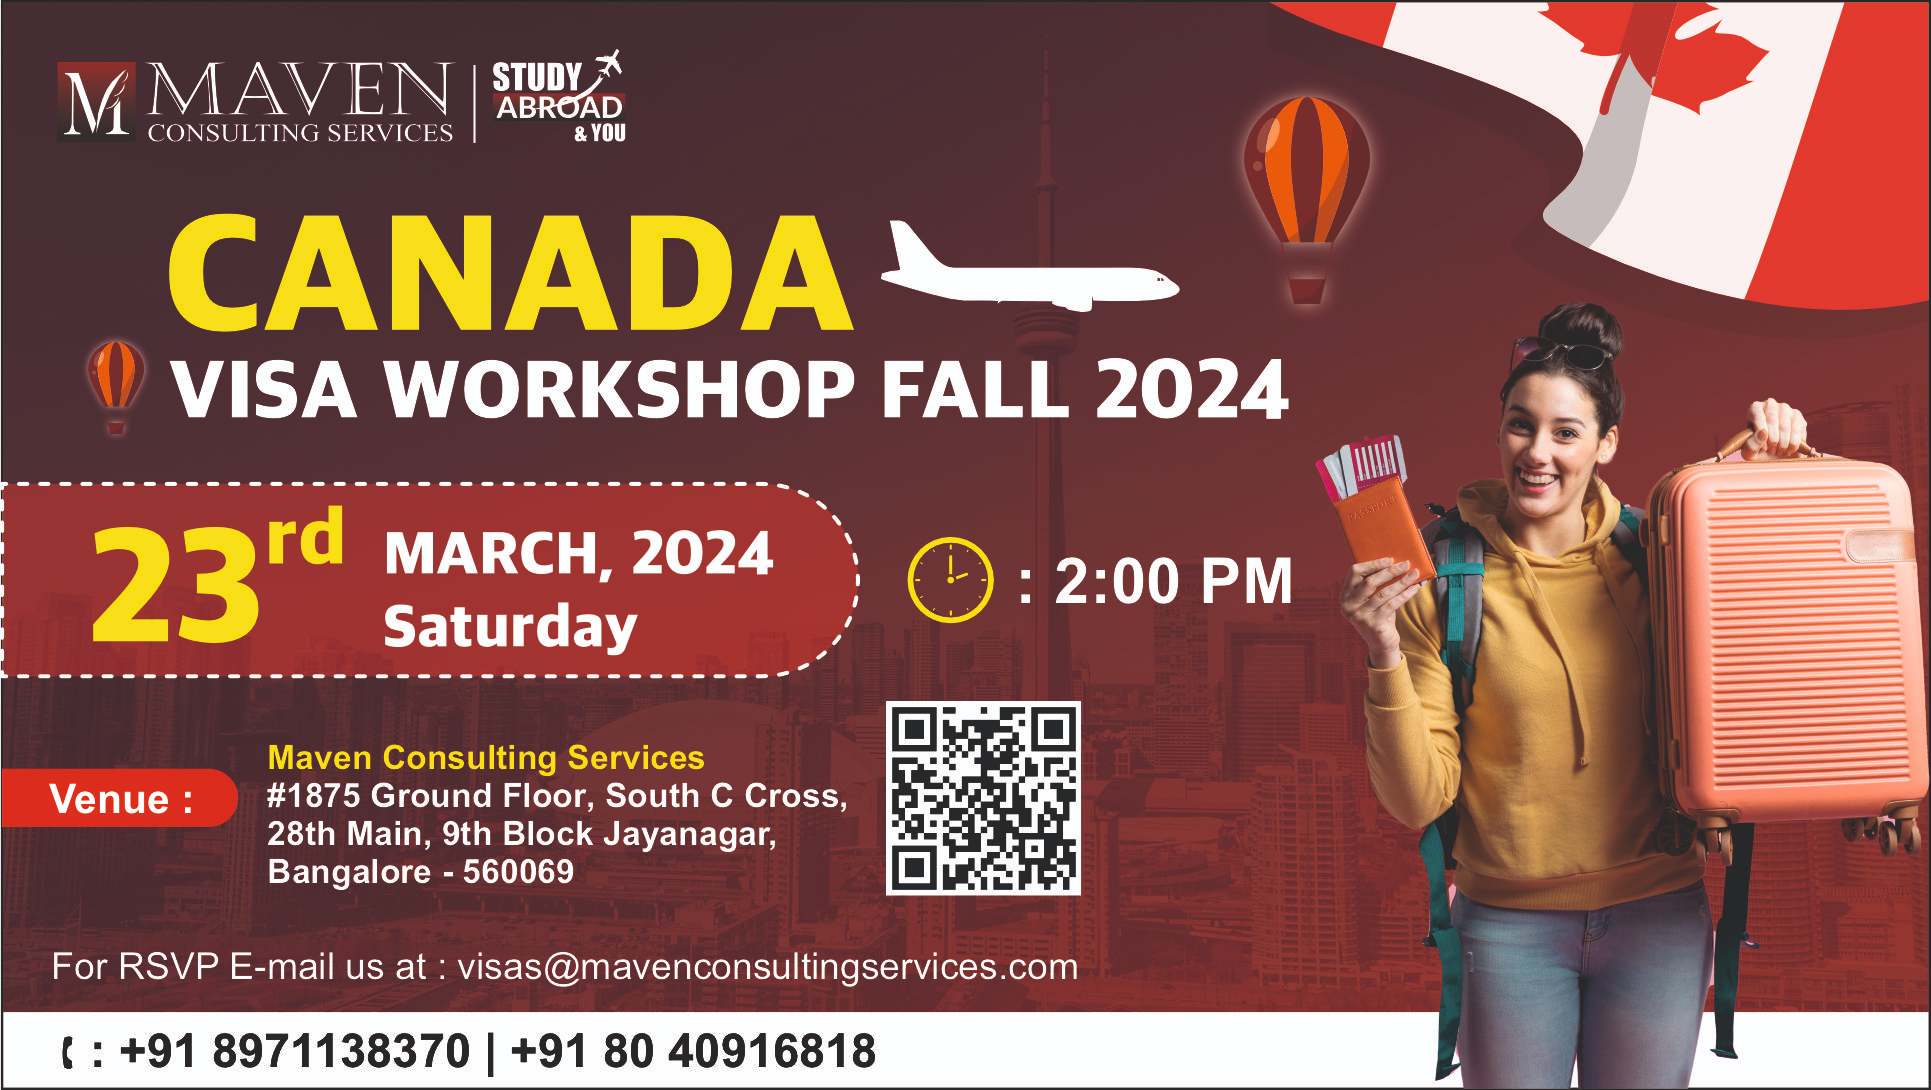 Canada Visa Workshop Fall 2024 event